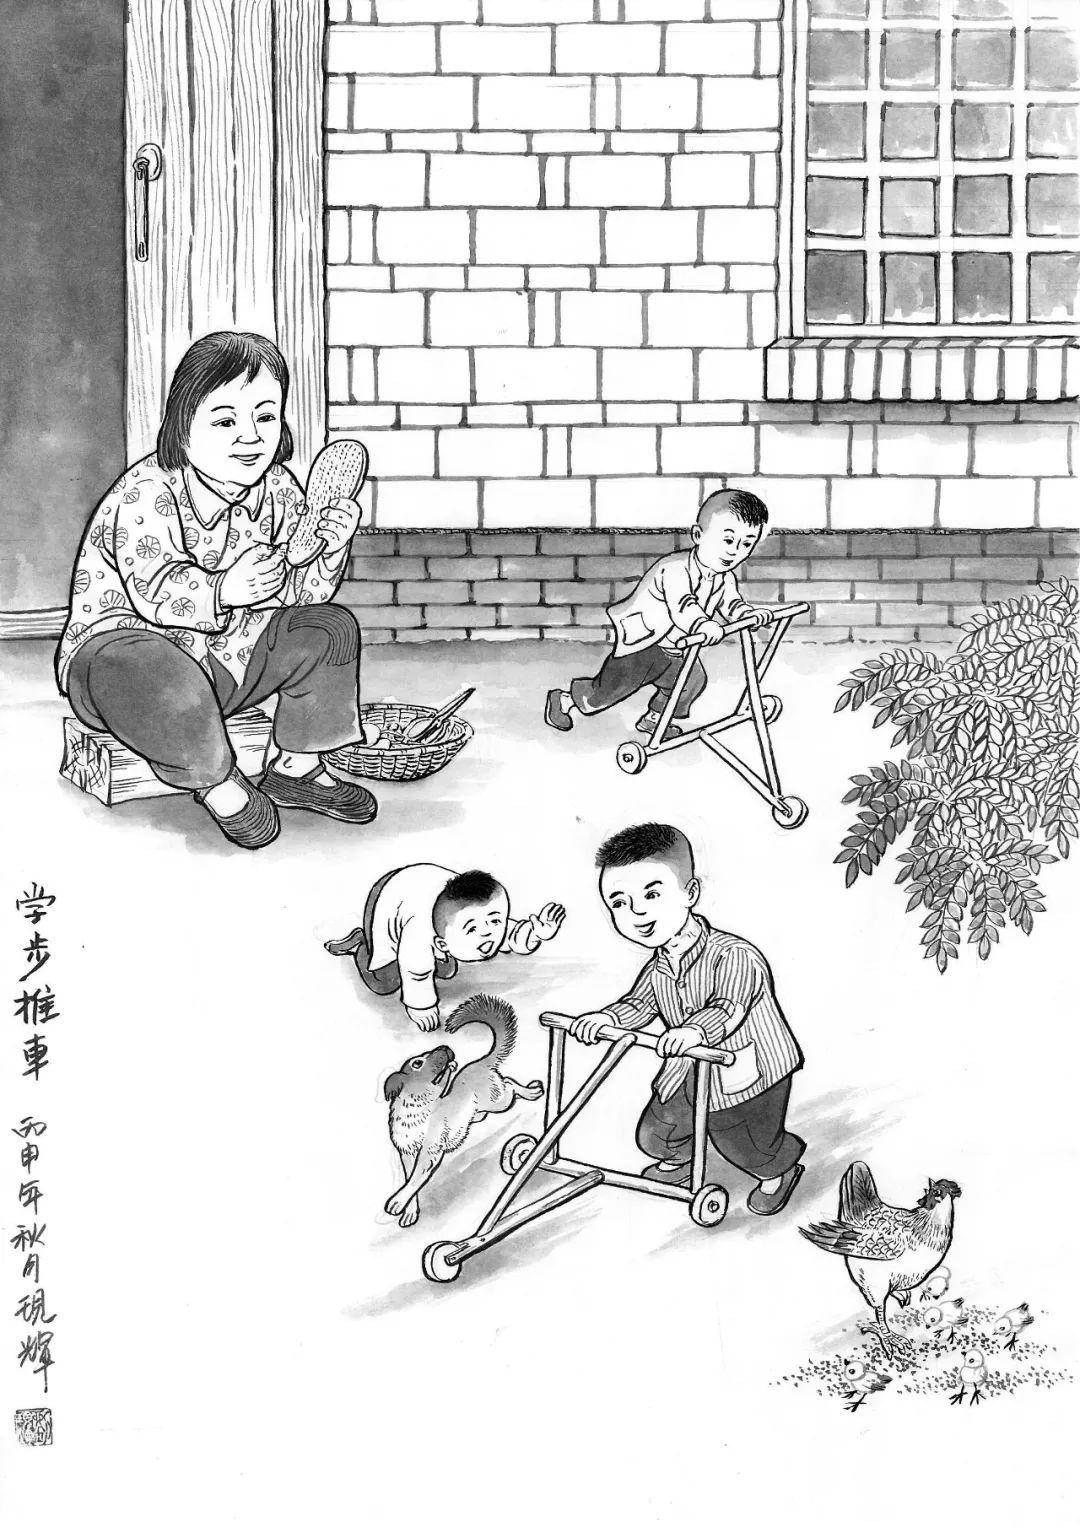 民俗漫画家刘现辉致敬童年留住乡愁